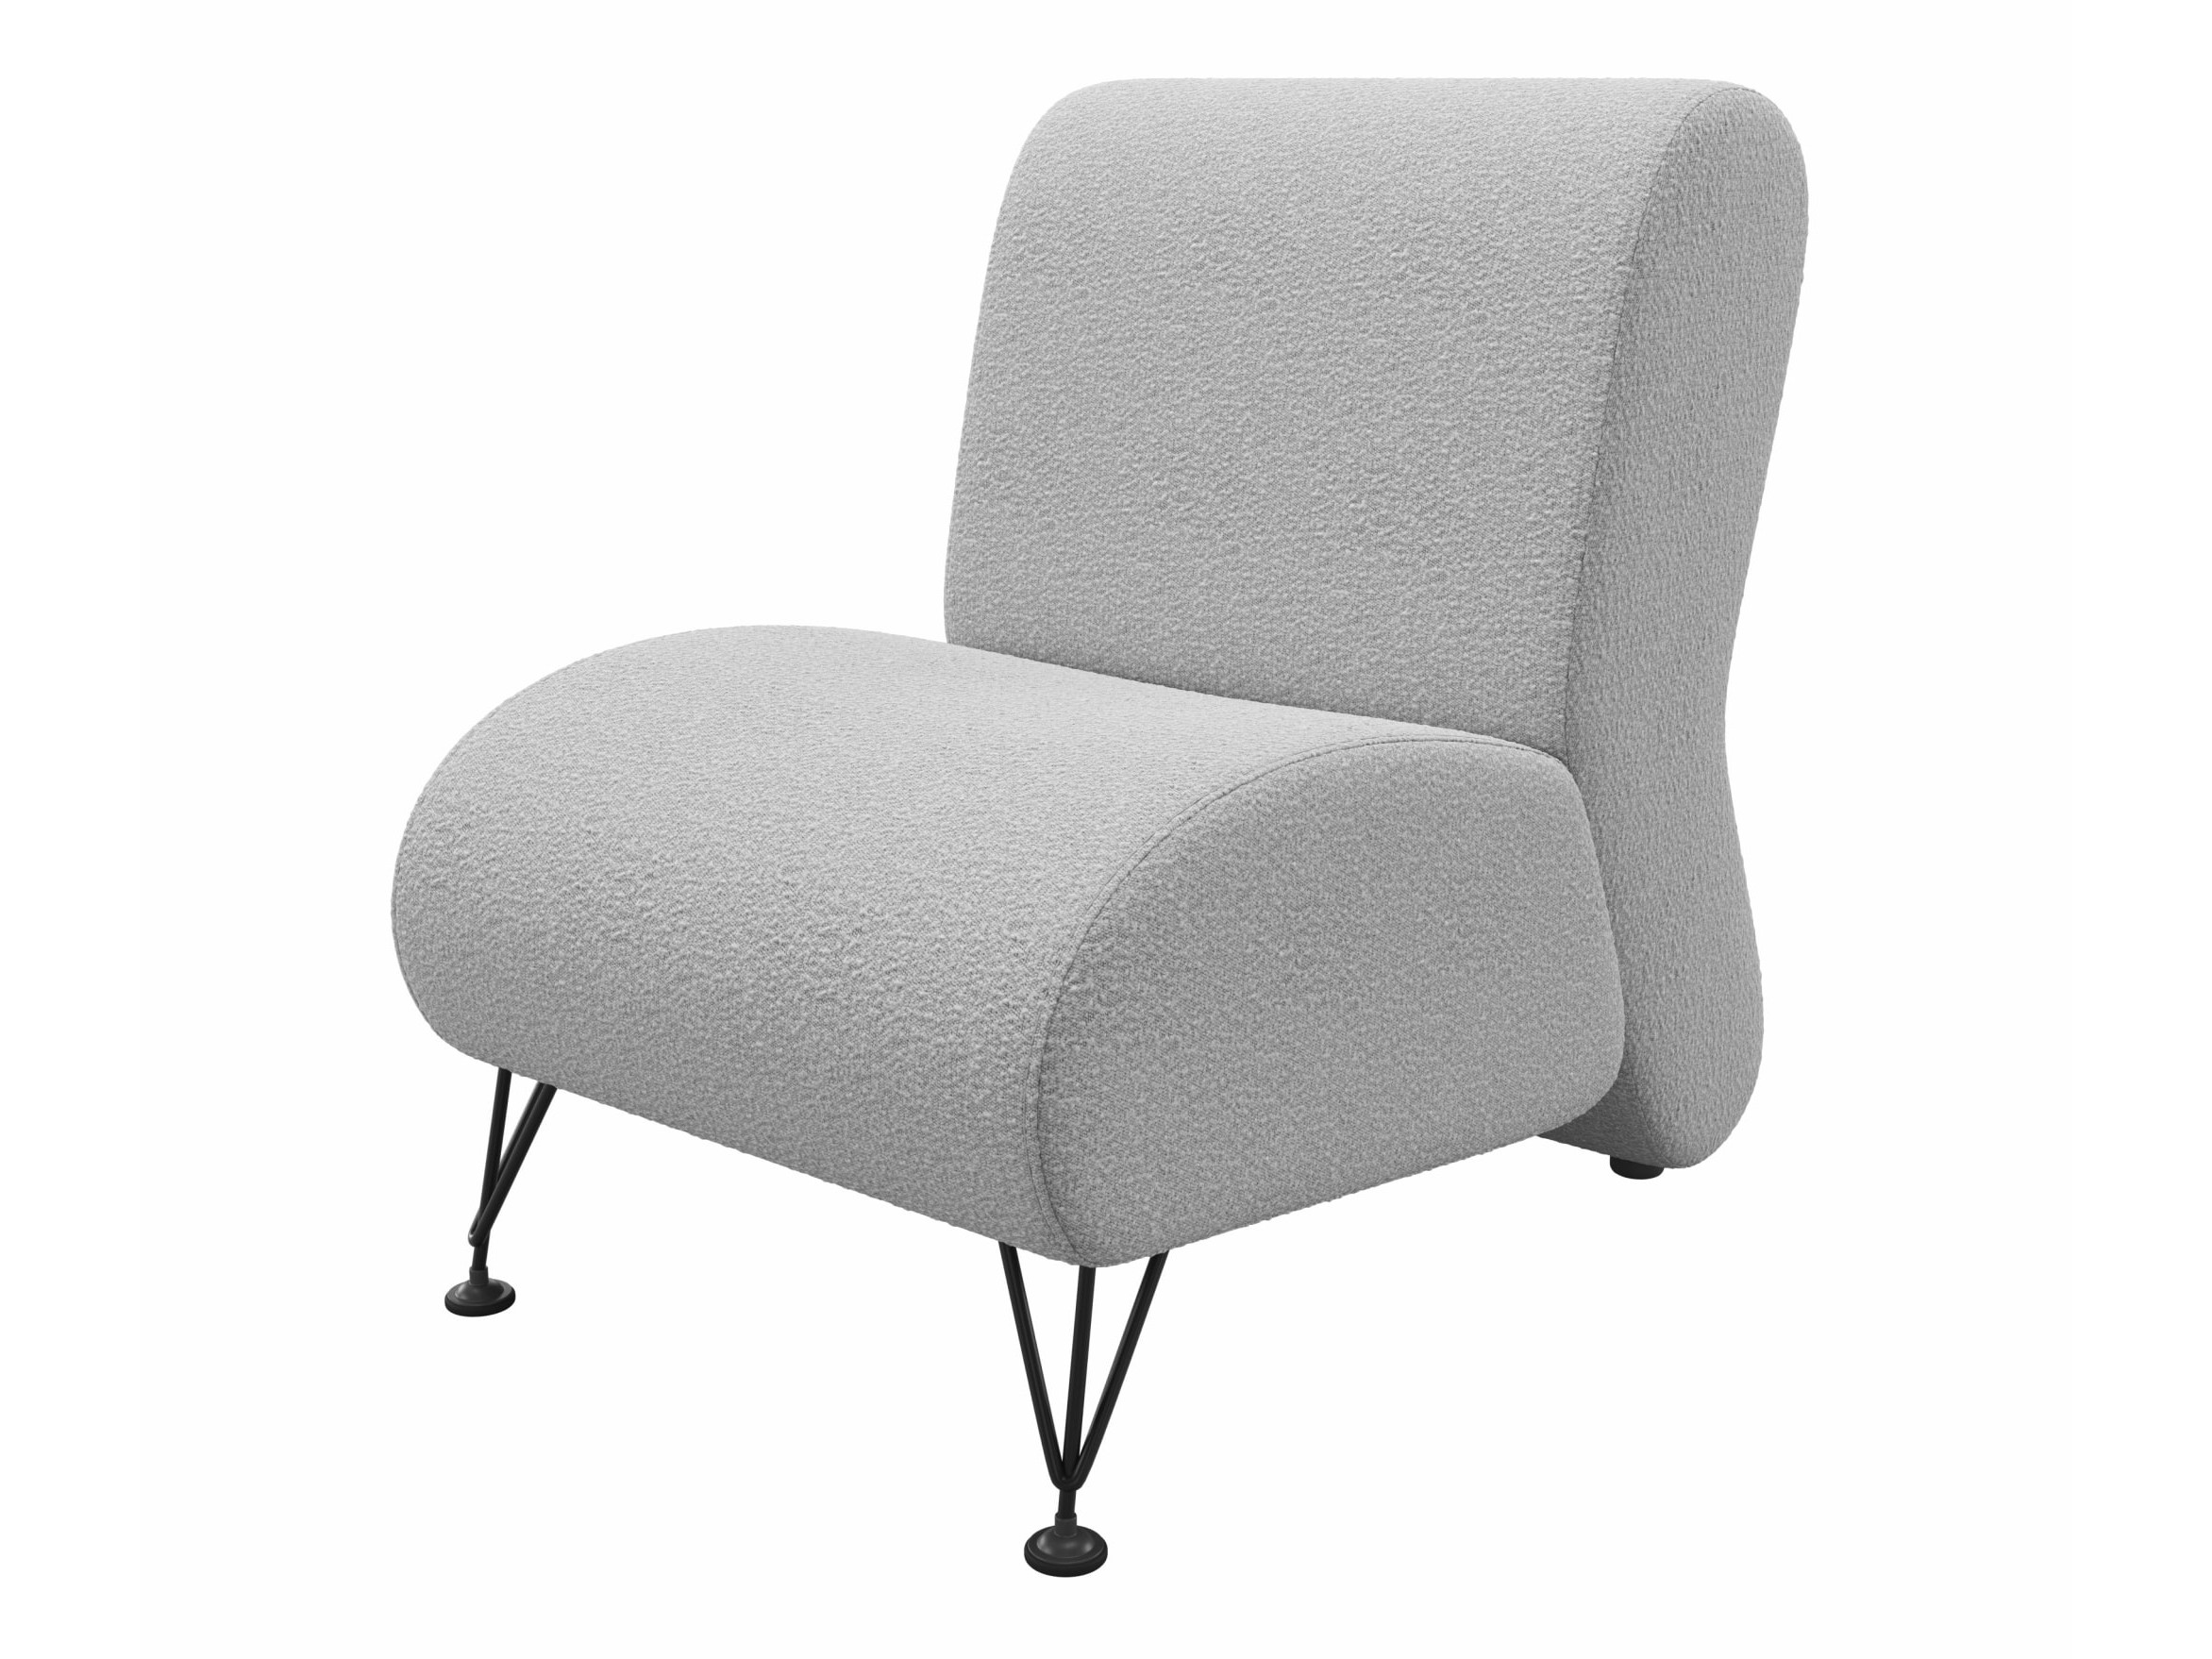 Мягкое дизайнерское кресло Pati букле светло-серый MebelVia светло-серый, букле